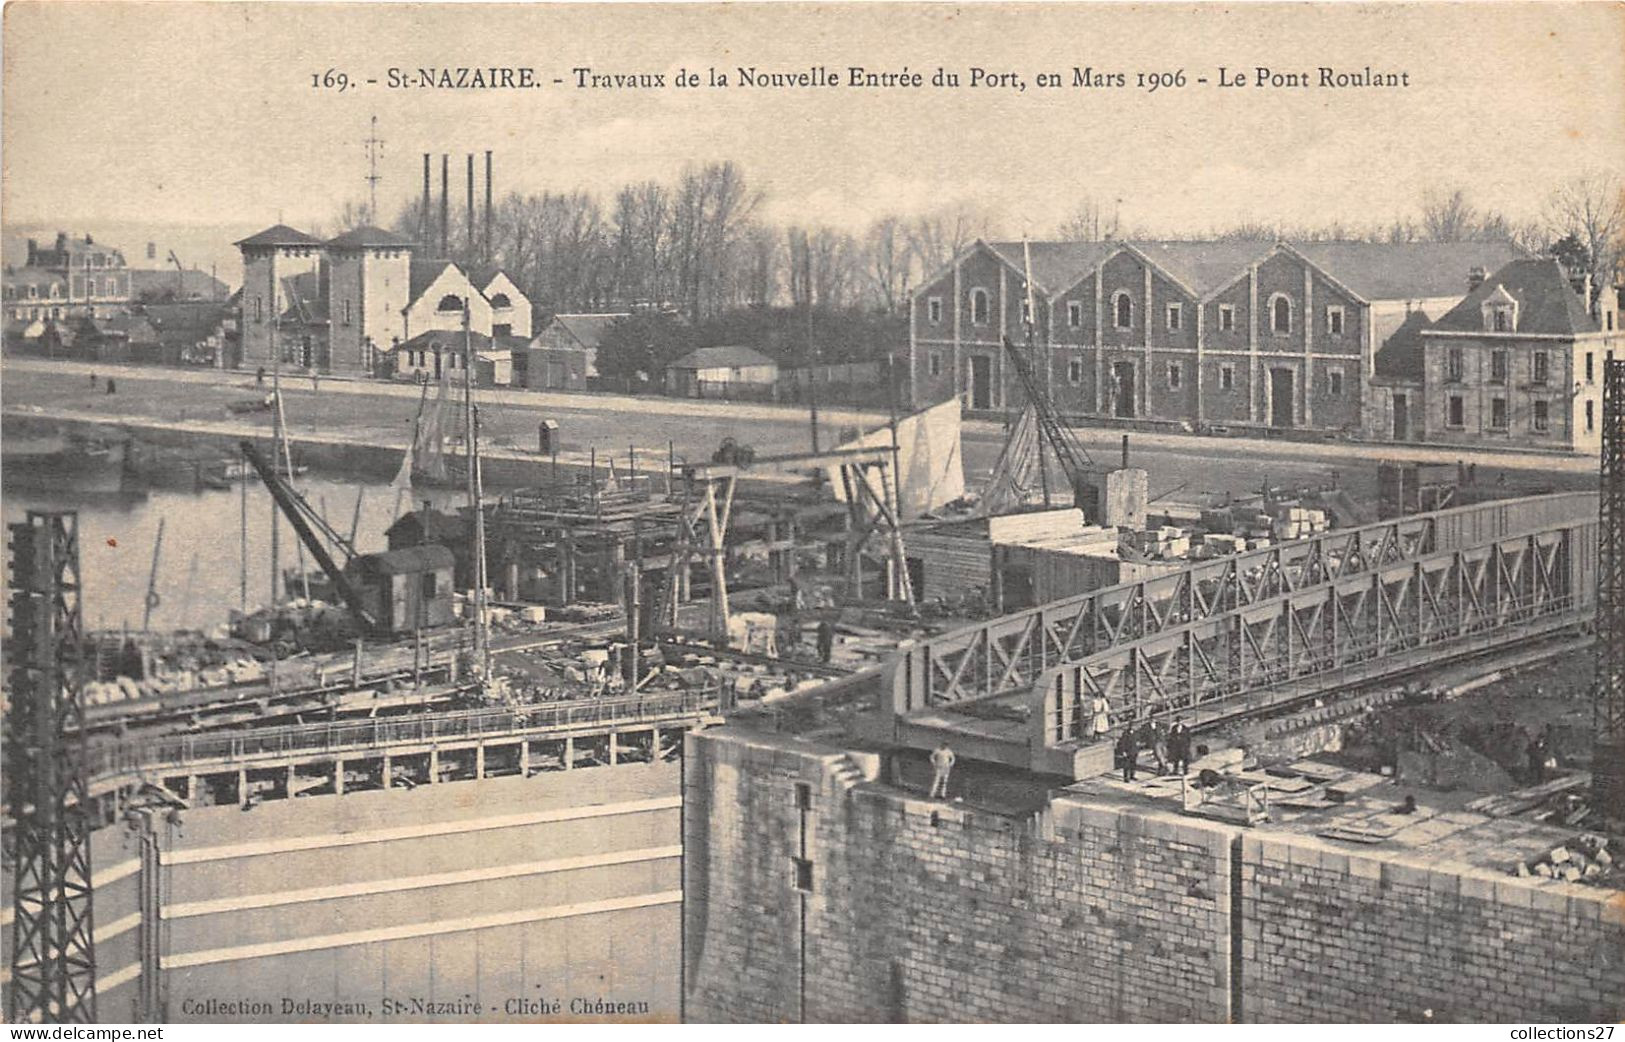 44-SAINT-NAZAIRE- TRAVAUX DE LA NOUVELLE ENTREE DU PORT , EN MARS 1906, LE PONT ROULANT - Saint Nazaire